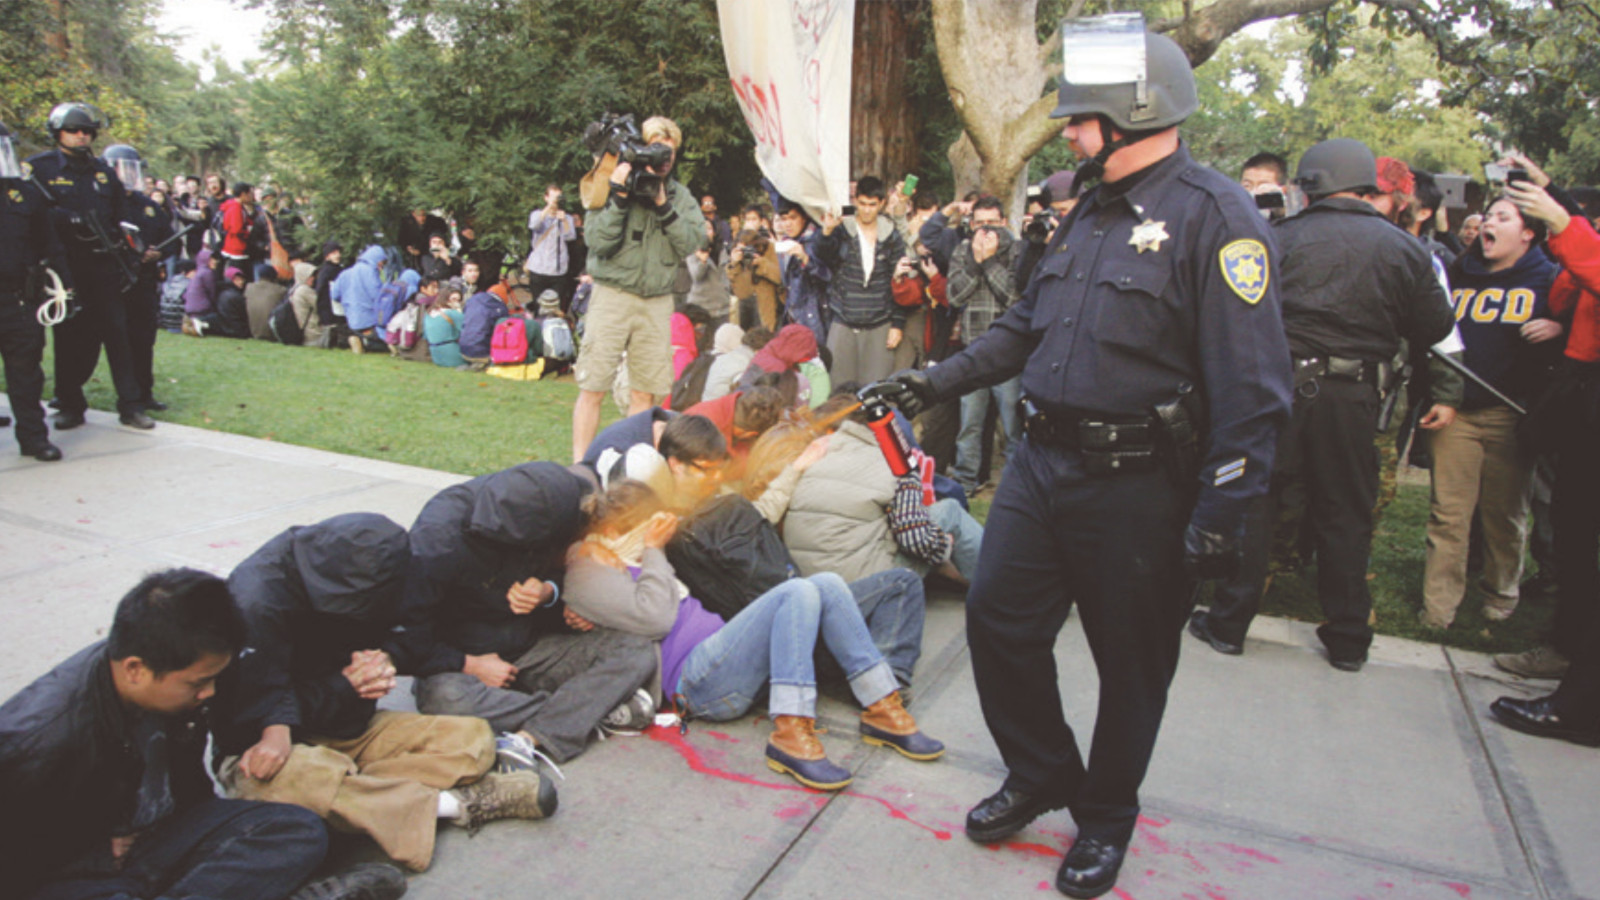 Επίθεση με σπρέι πιπεριού το 2011 σε φοιτητές που πραγματοποιούσαν καθιστική διαμαρτυρία. Μάλιστα στο συγκεκριμένο πανεπιστήμιο οι αστυνομικοί έχουν «ελαφρύ» οπλισμό, όπως γκλοπ, σπρέι και χειροπέδες.